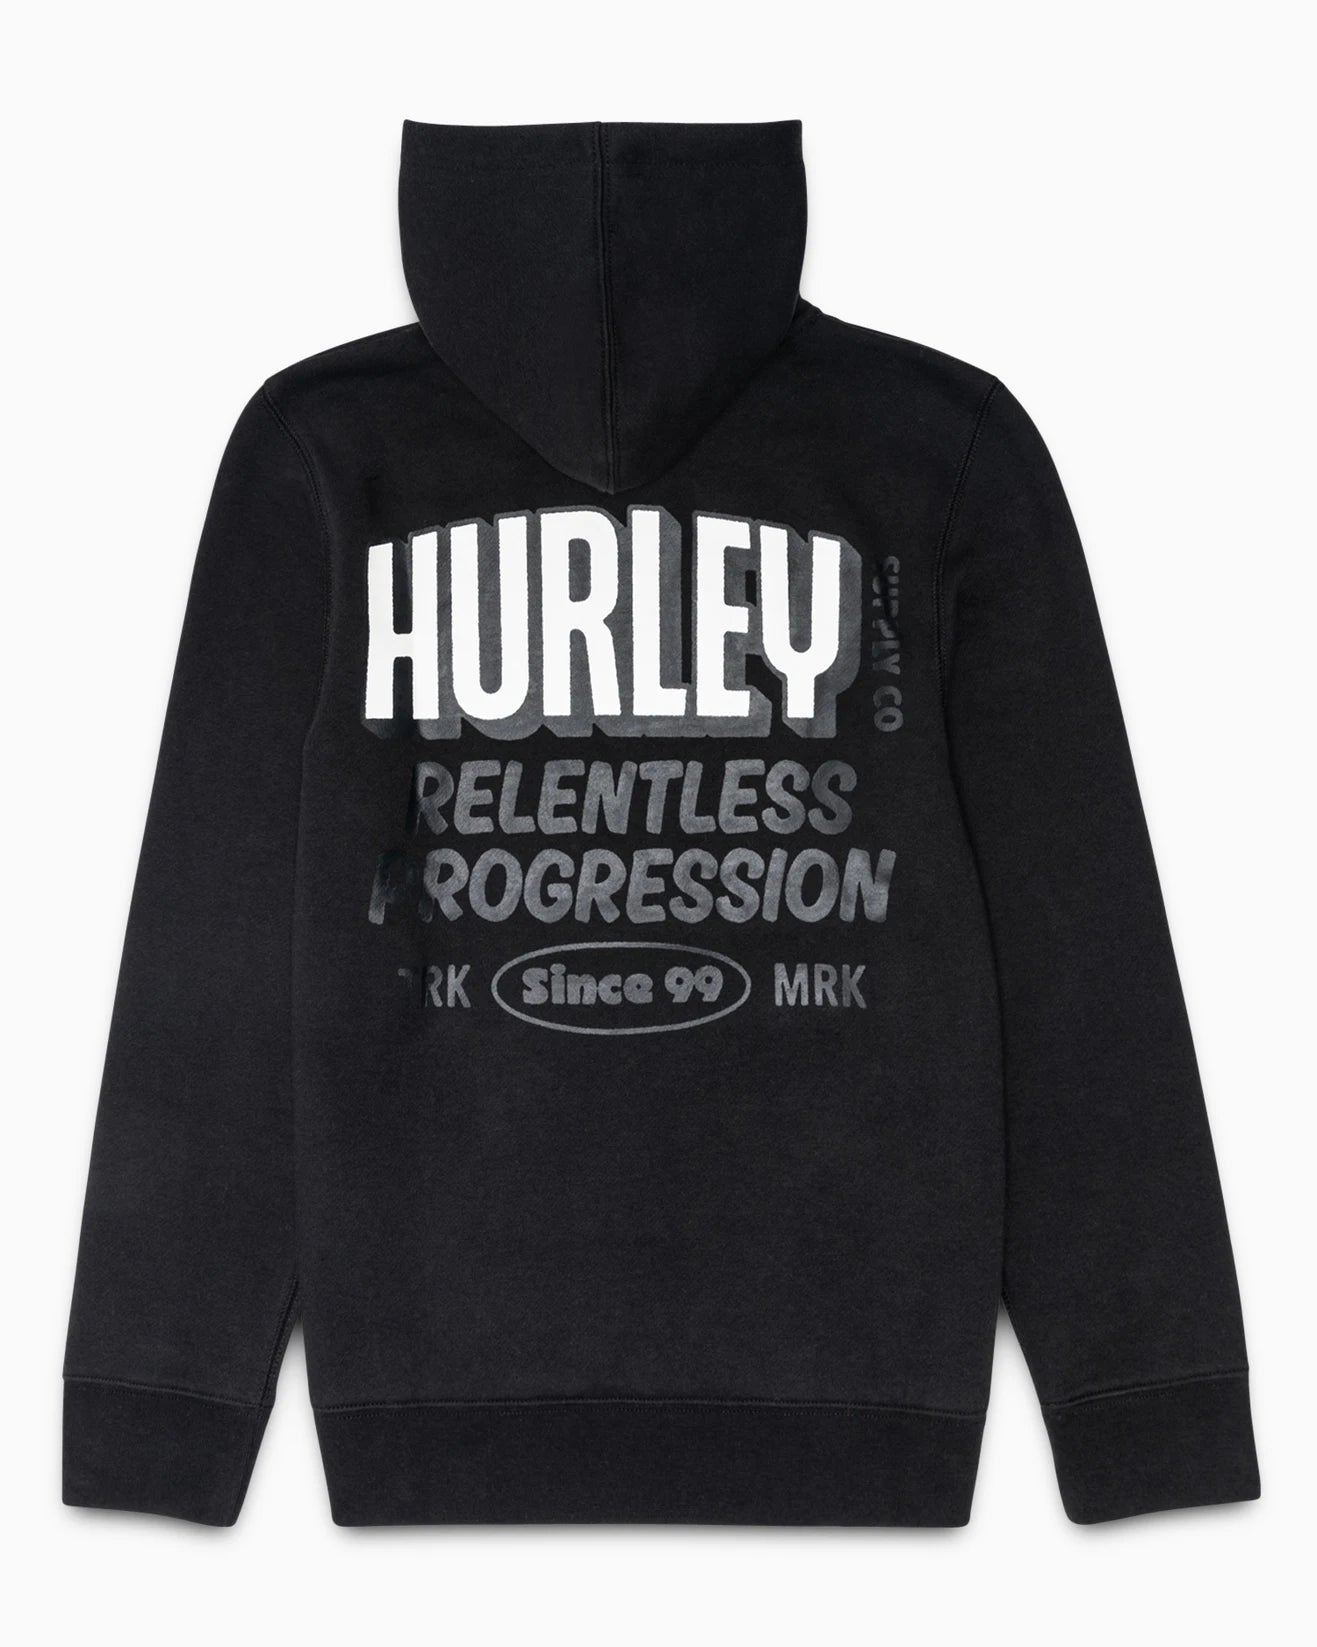 black pullover boys hoodie, hurley